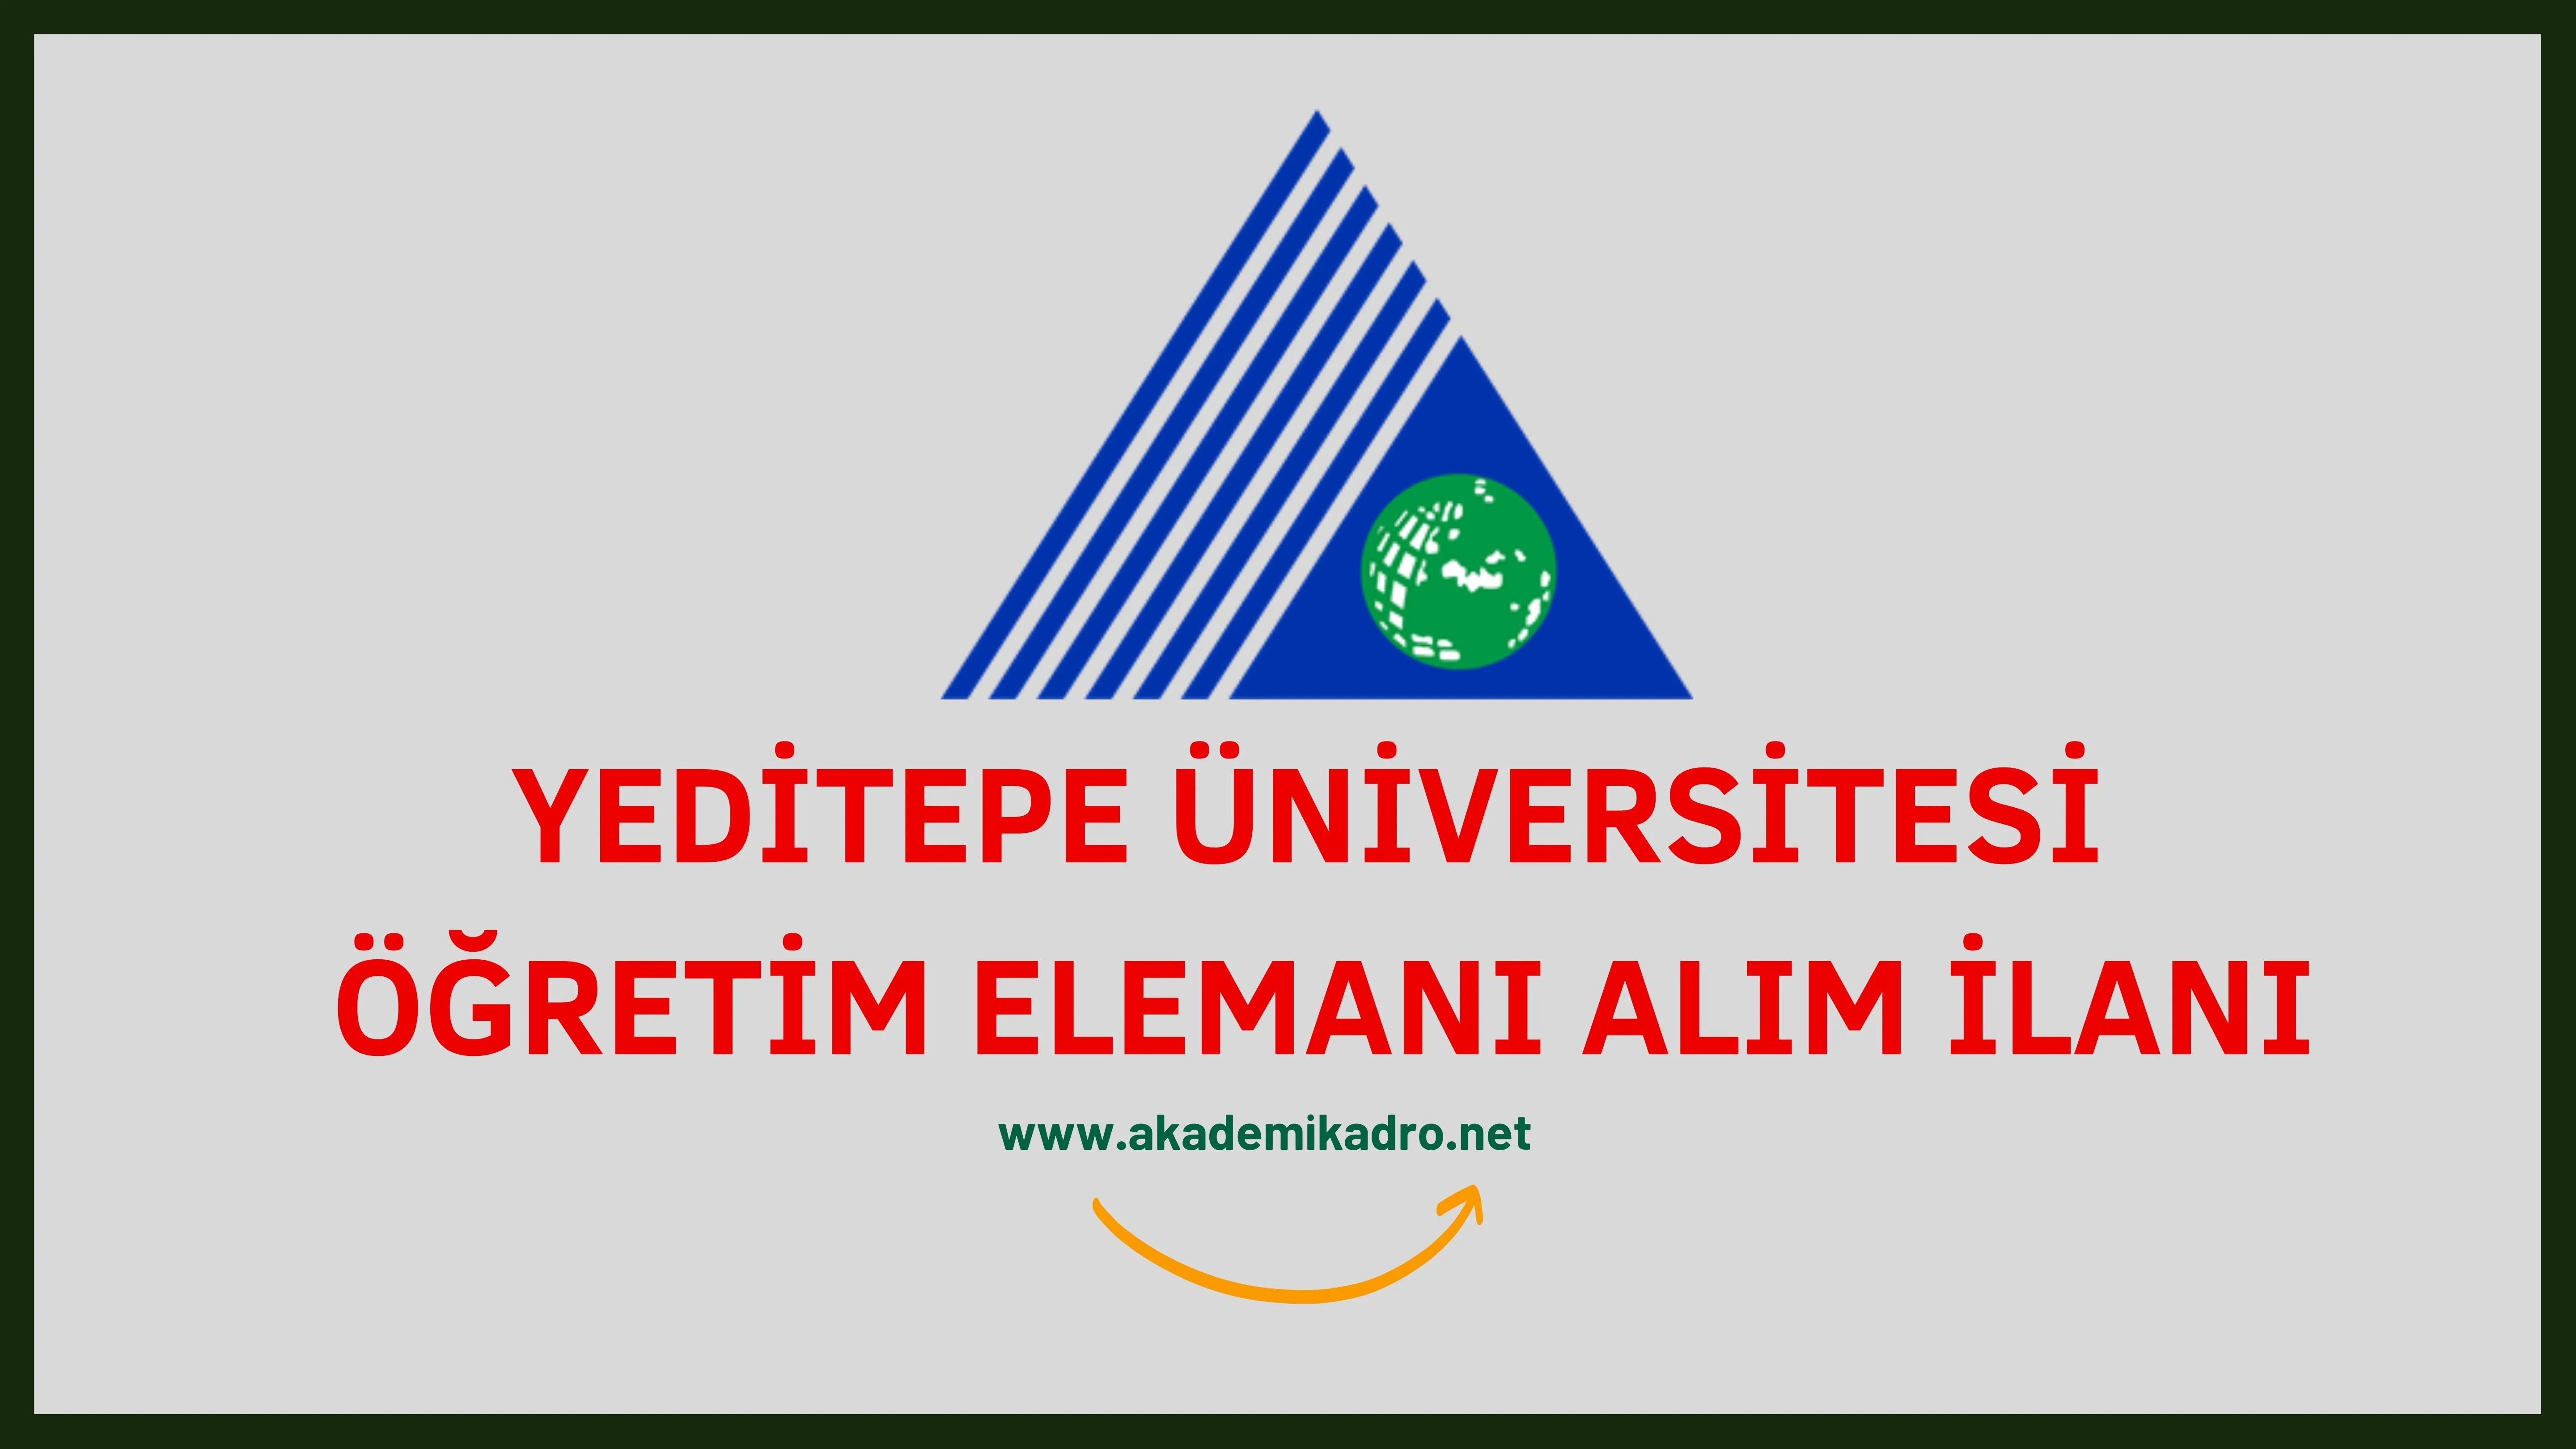 Yeditepe Üniversitesi 4 Araştırma görevlisi, 2 öğretim görevlisi ve çok sayıda öğretim üyesi alacaktır.